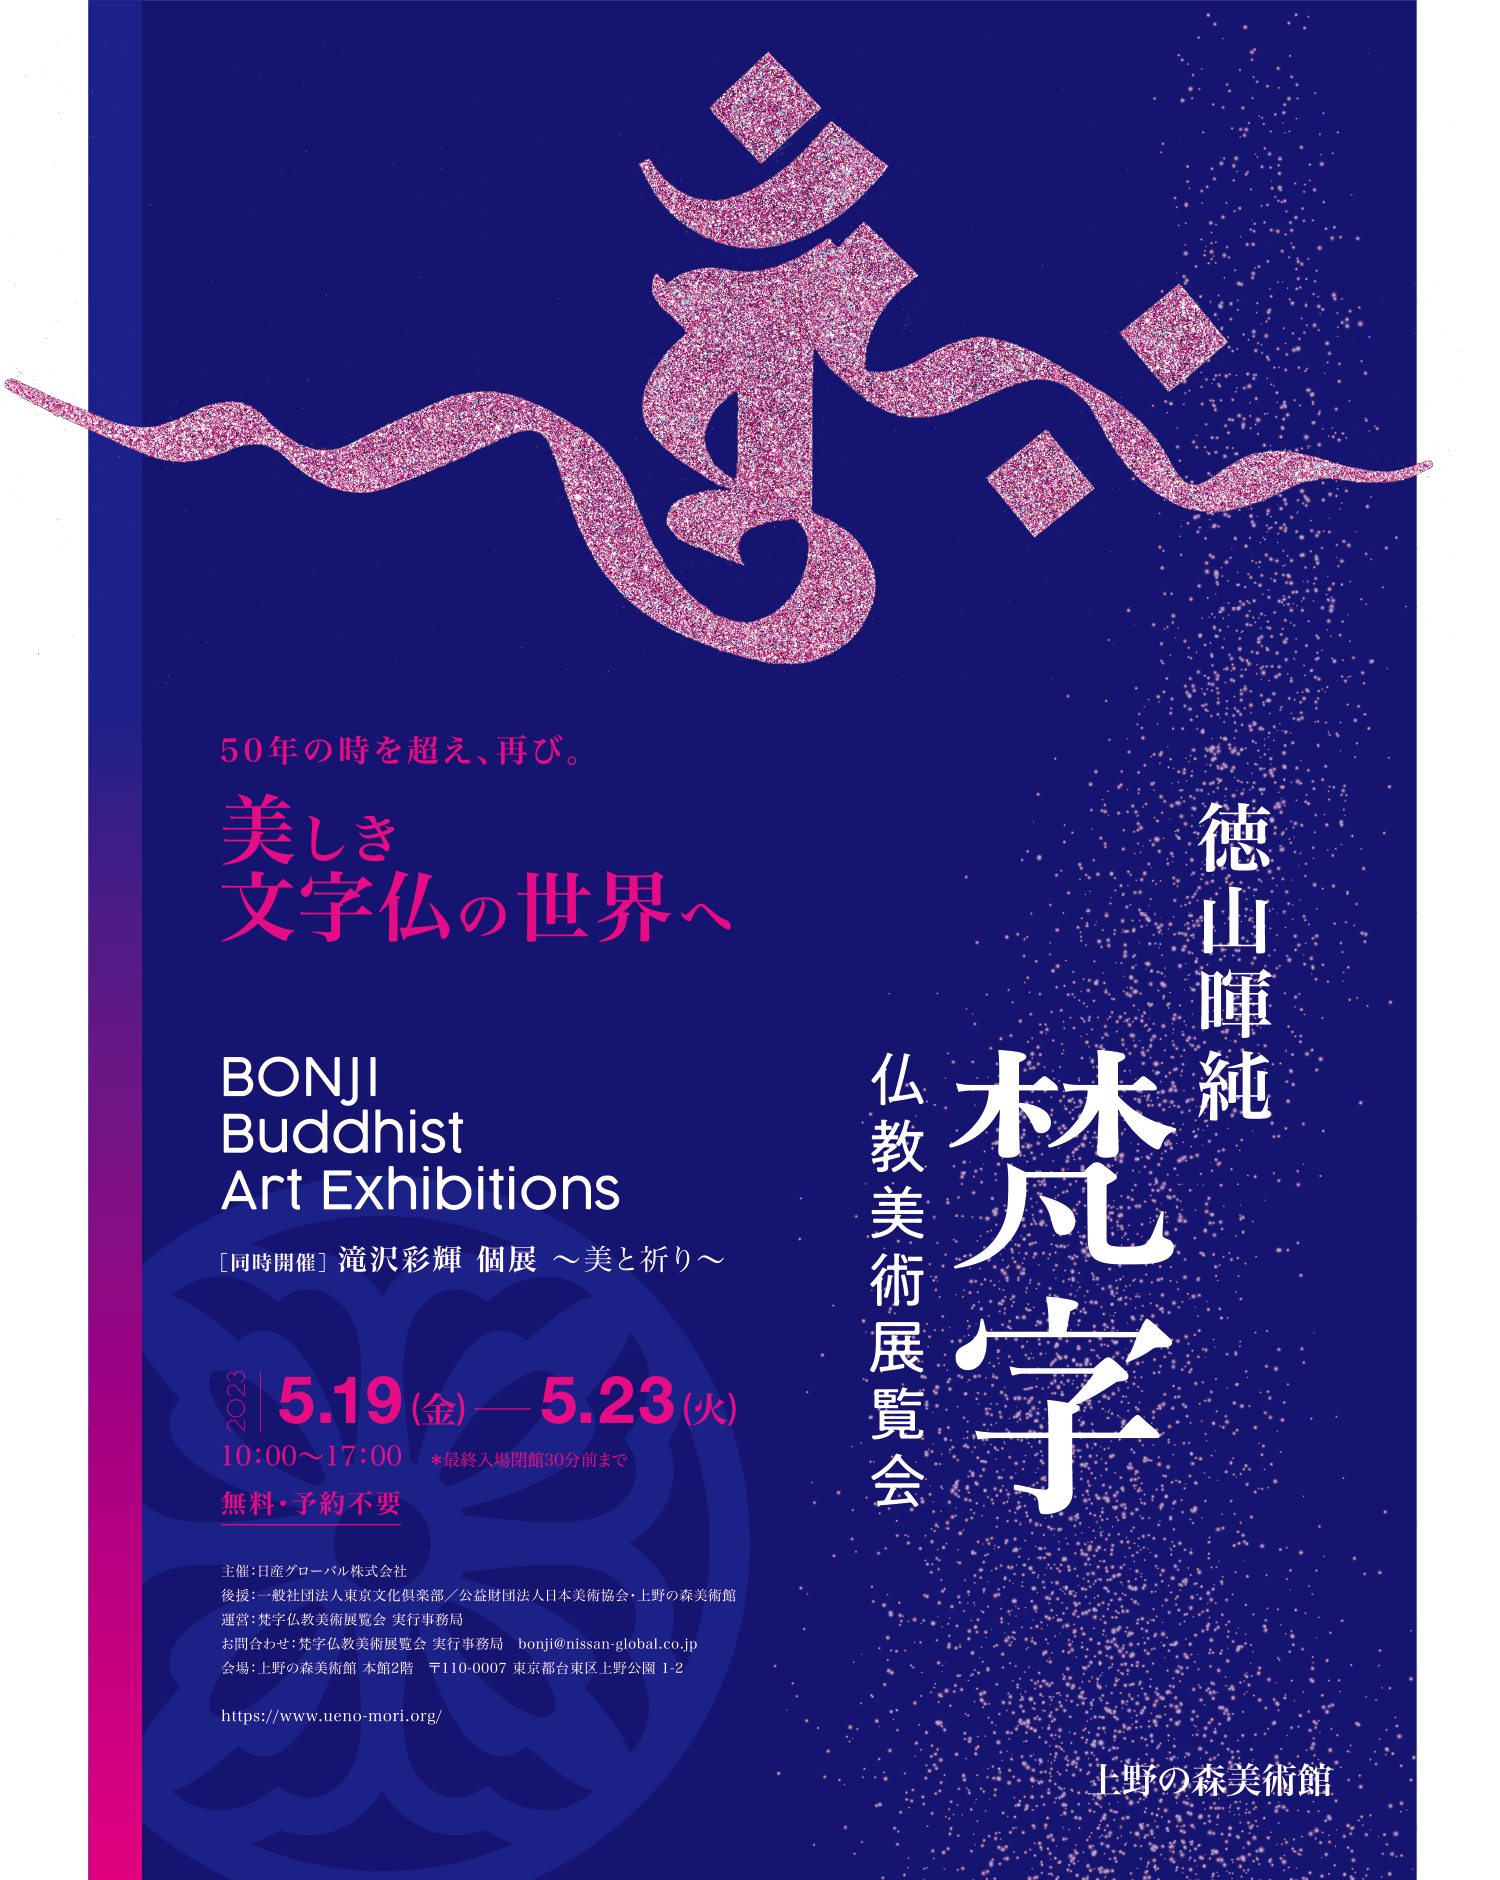 徳山暉純「梵字仏教美術展覧会」 | 美しき文字仏の世界へ